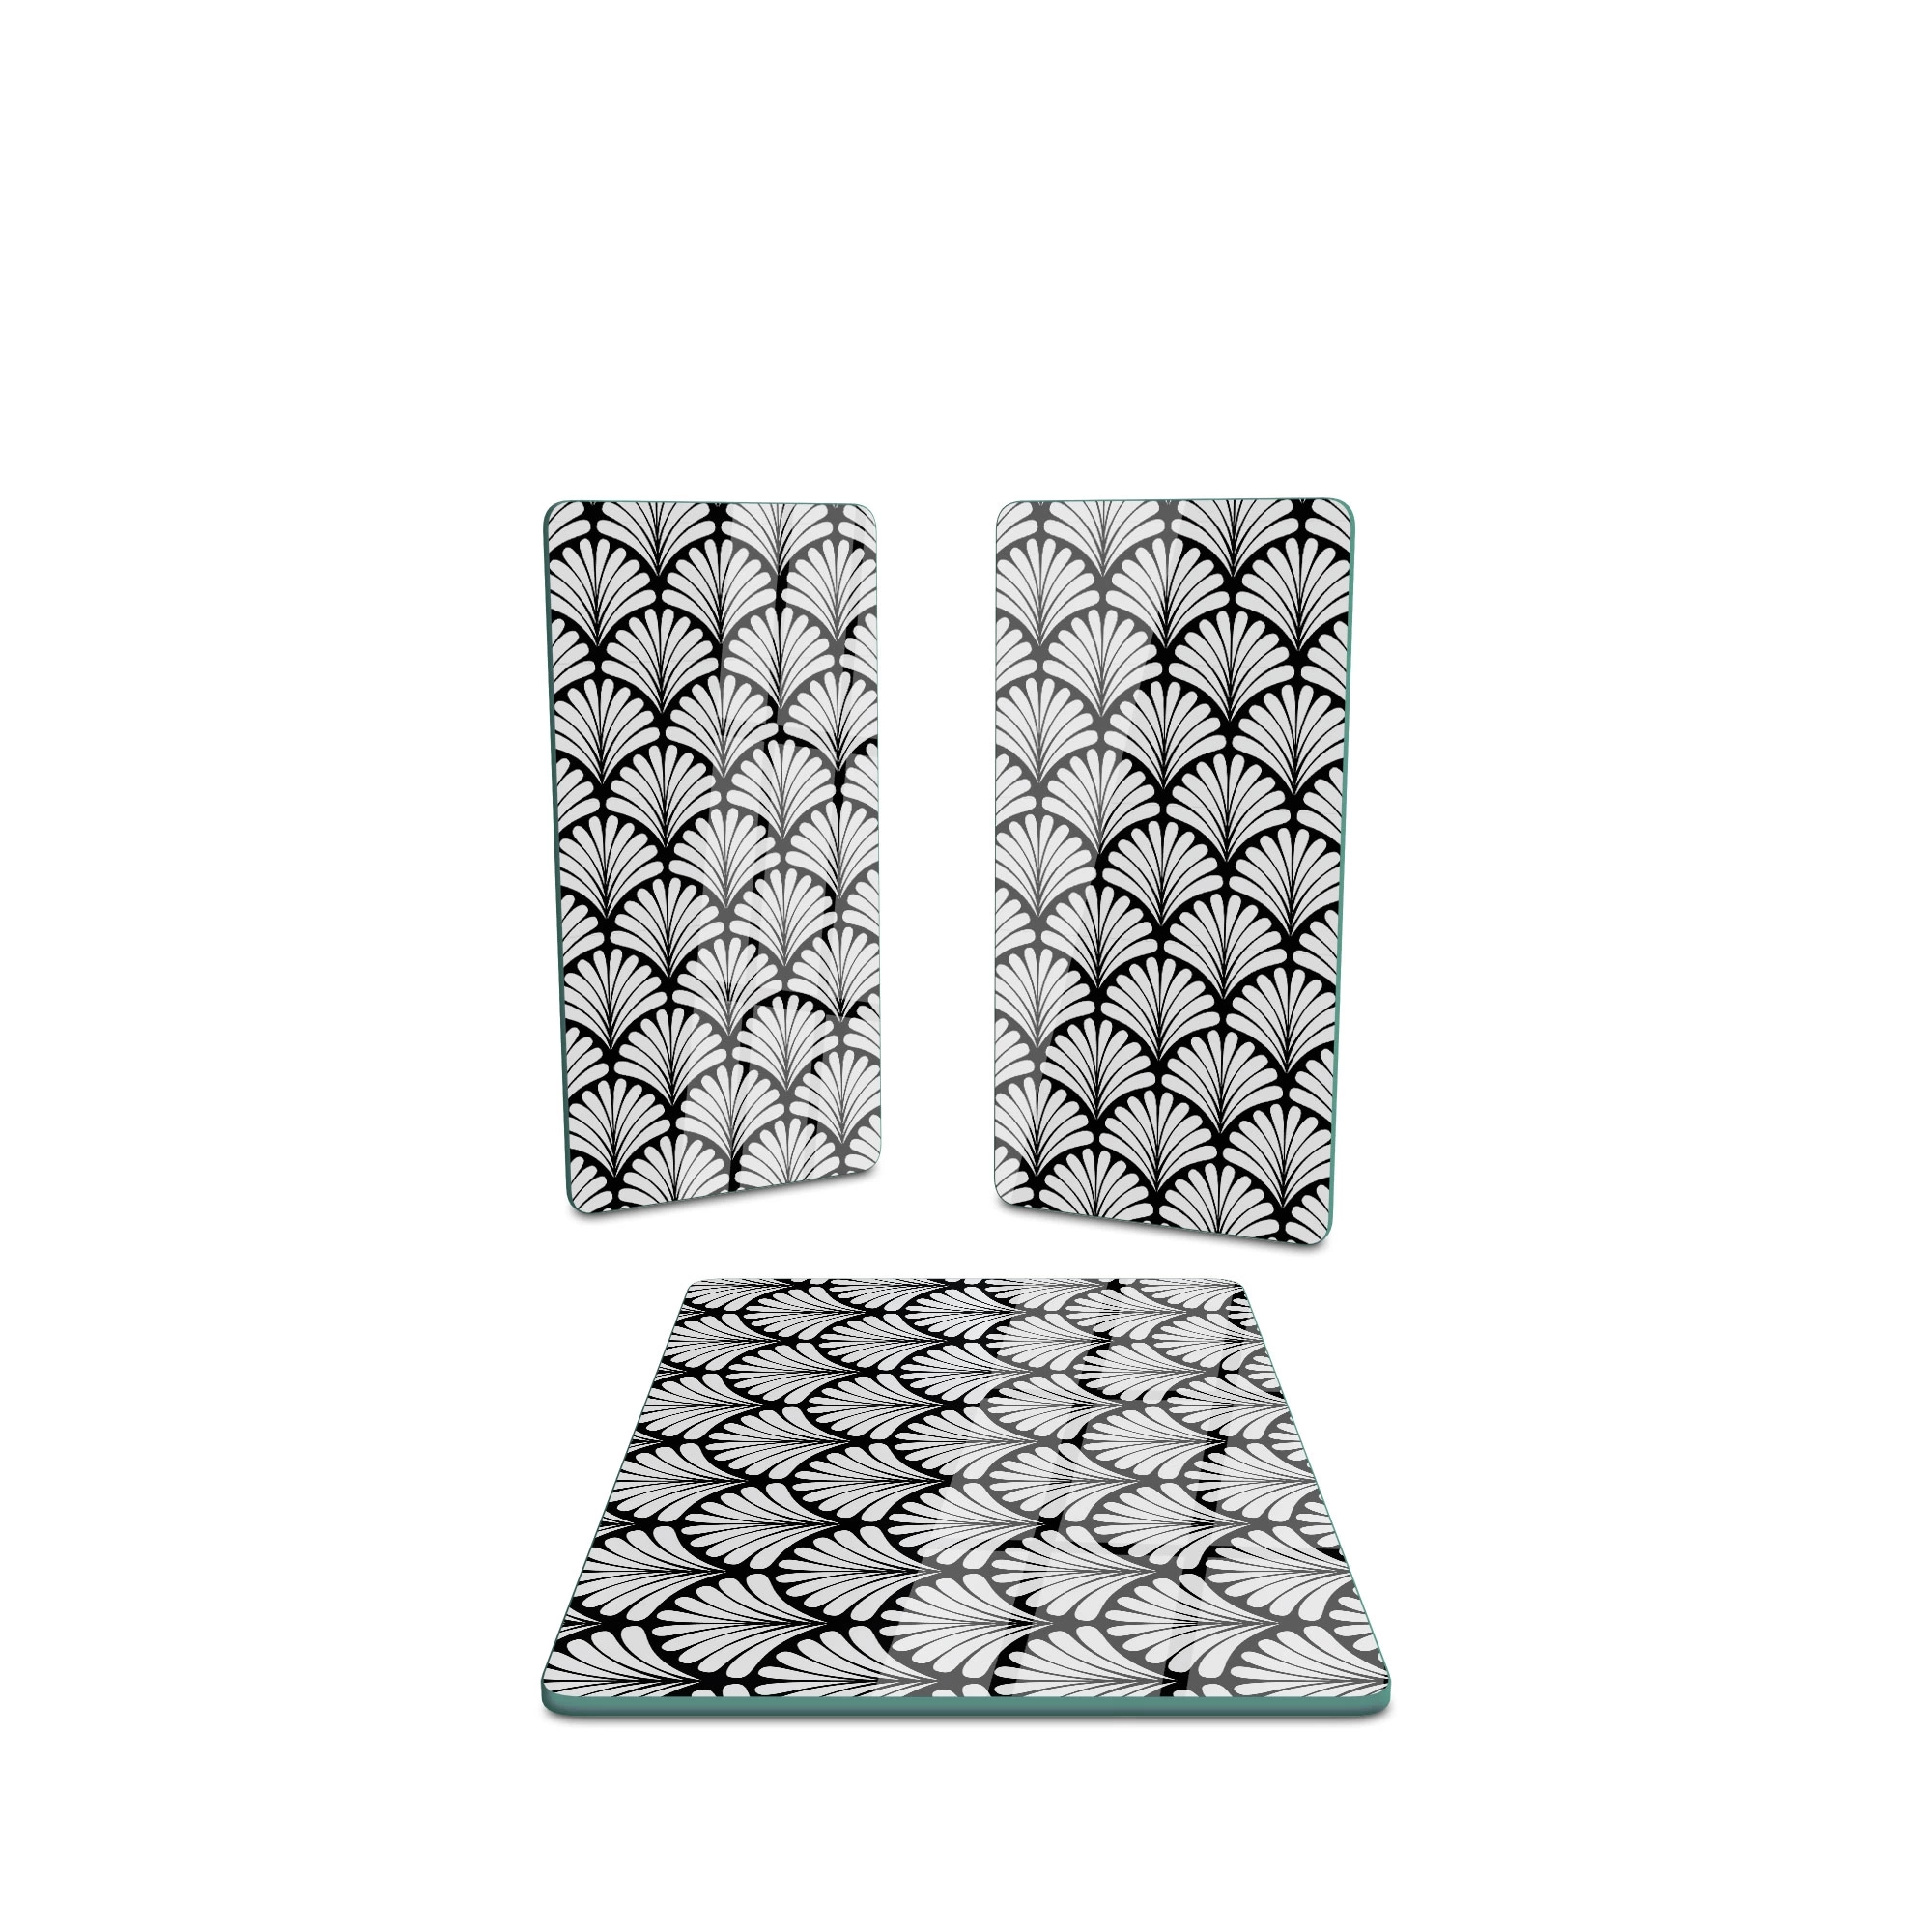 Decovetro Cam Sunum Servis Tabağı 3lü Dikdörtgen Set Siyah Beyaz Geometrik Desenli